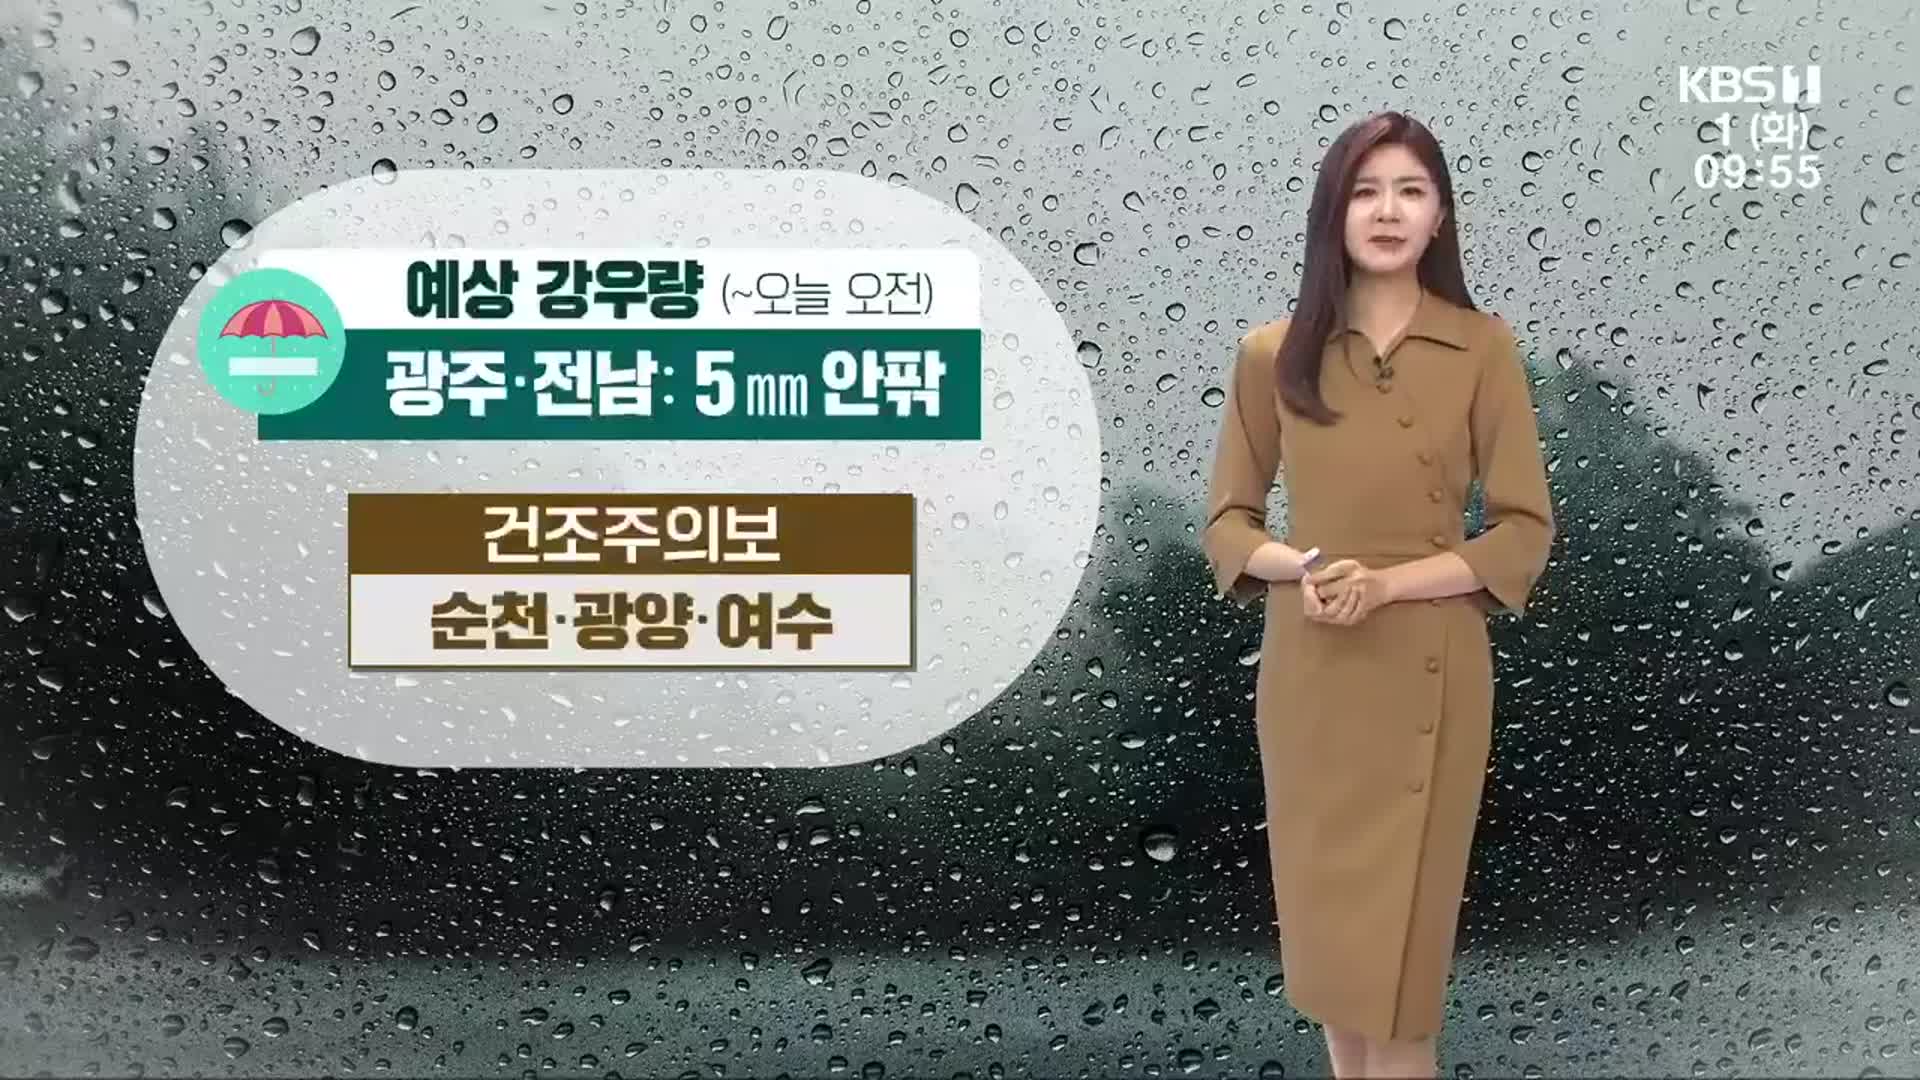 [날씨] 광주·전남 5mm 안팎 비소식, 오후 초미세먼지 ‘나쁨’